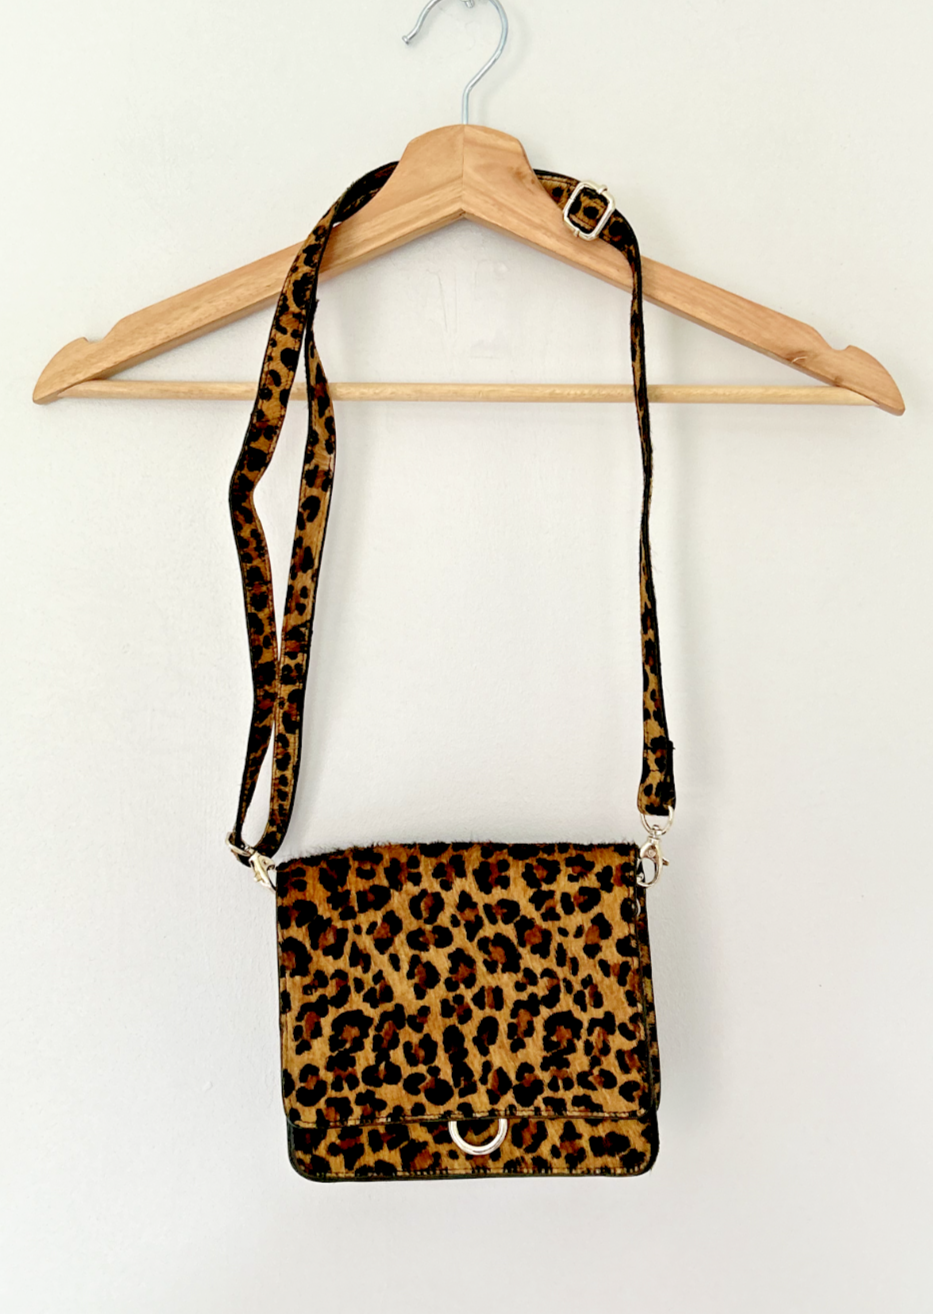 Mint Velvet Leopard Crossbody Bag Brown Animal Print Leather | eBay